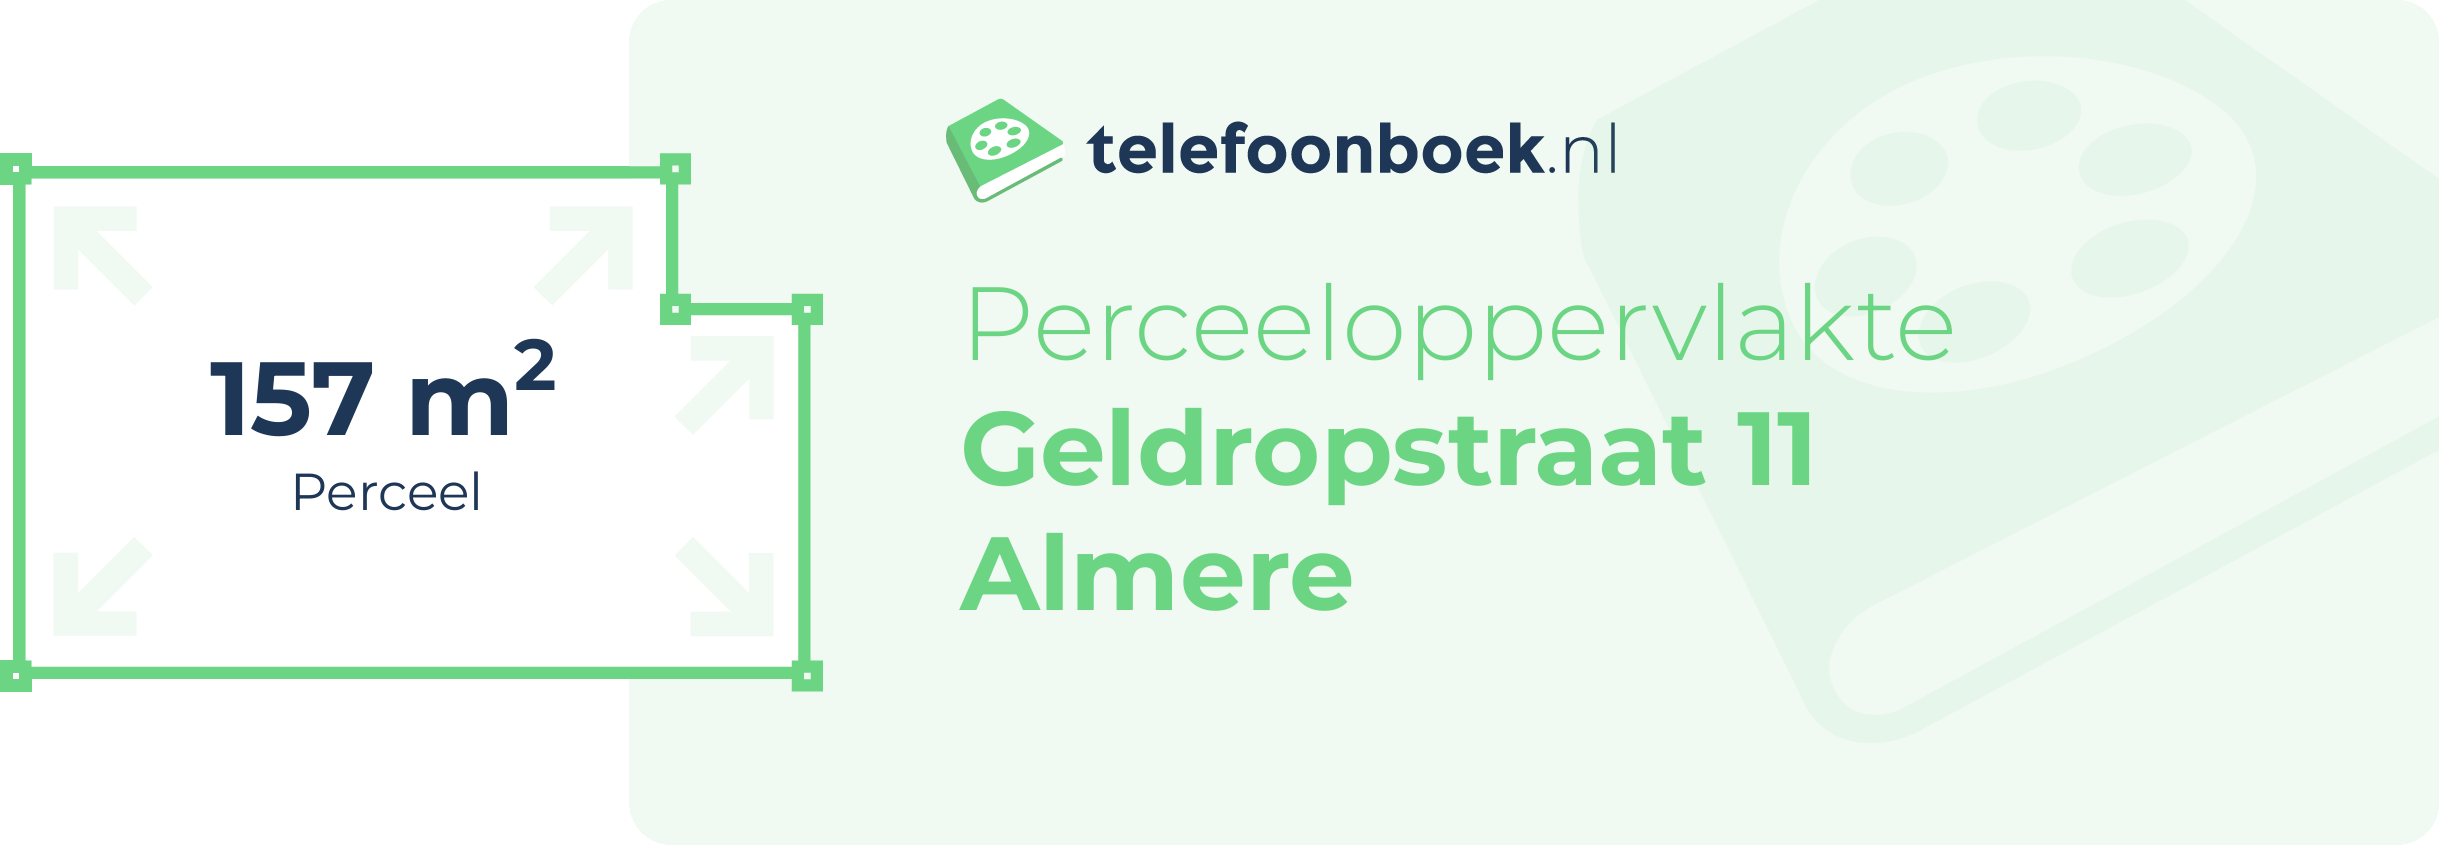 Perceeloppervlakte Geldropstraat 11 Almere